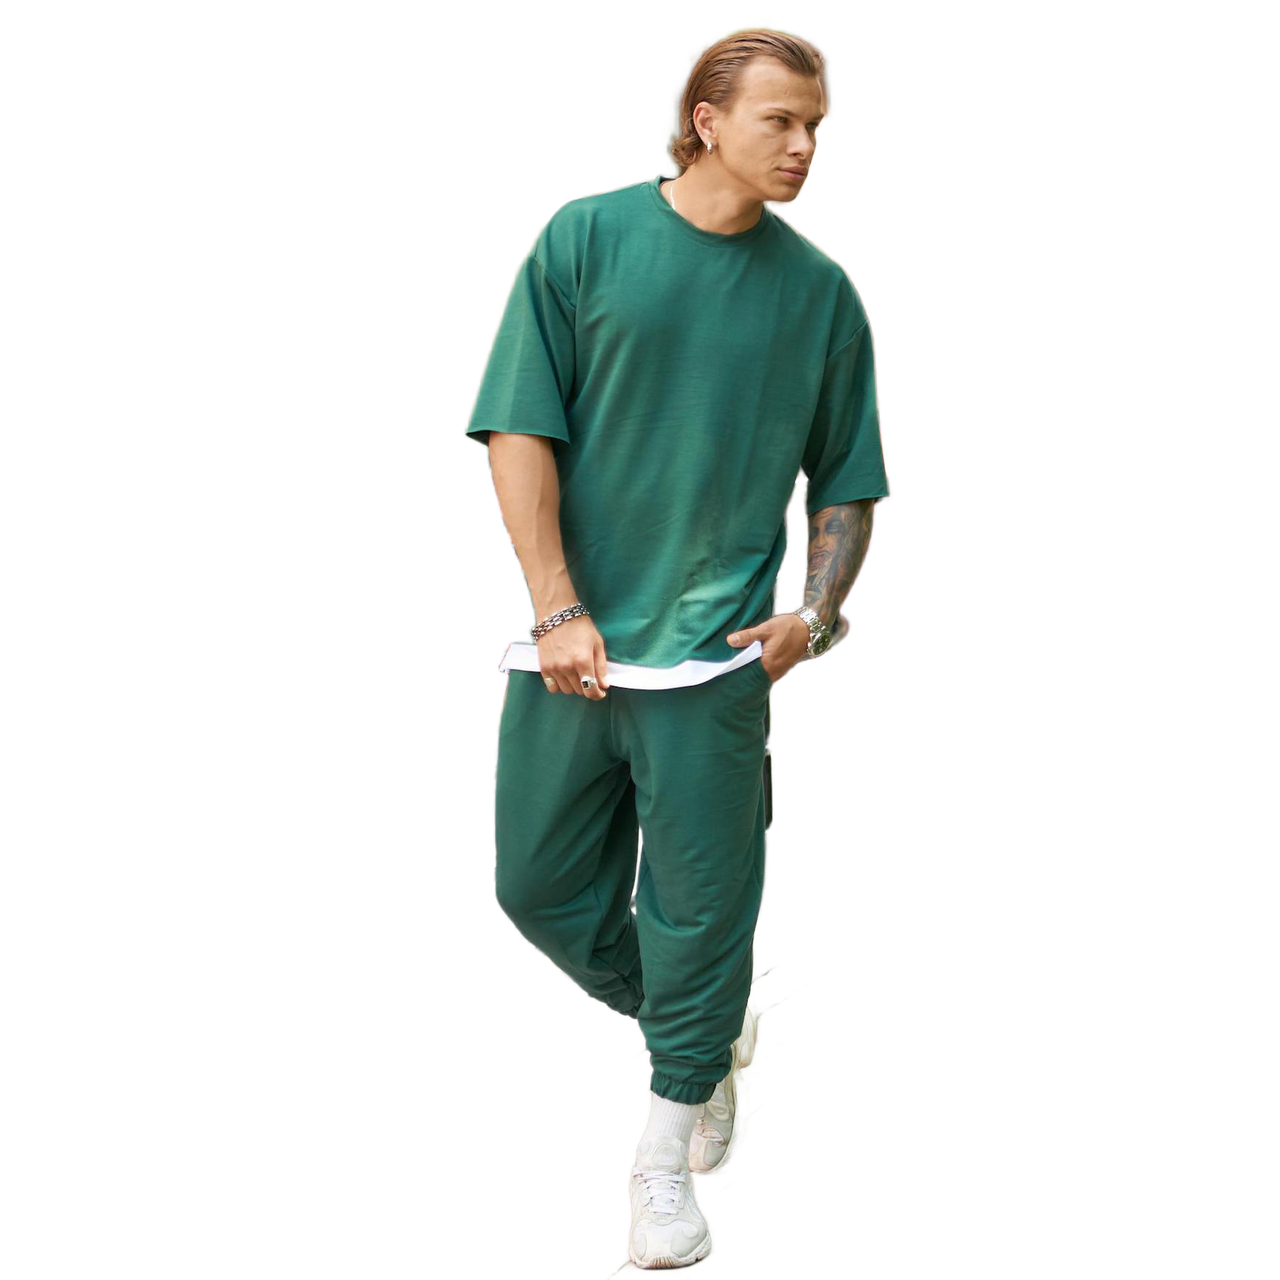 Літній спортивний костюм чоловічий, колір зелений, пошив оверсайз.